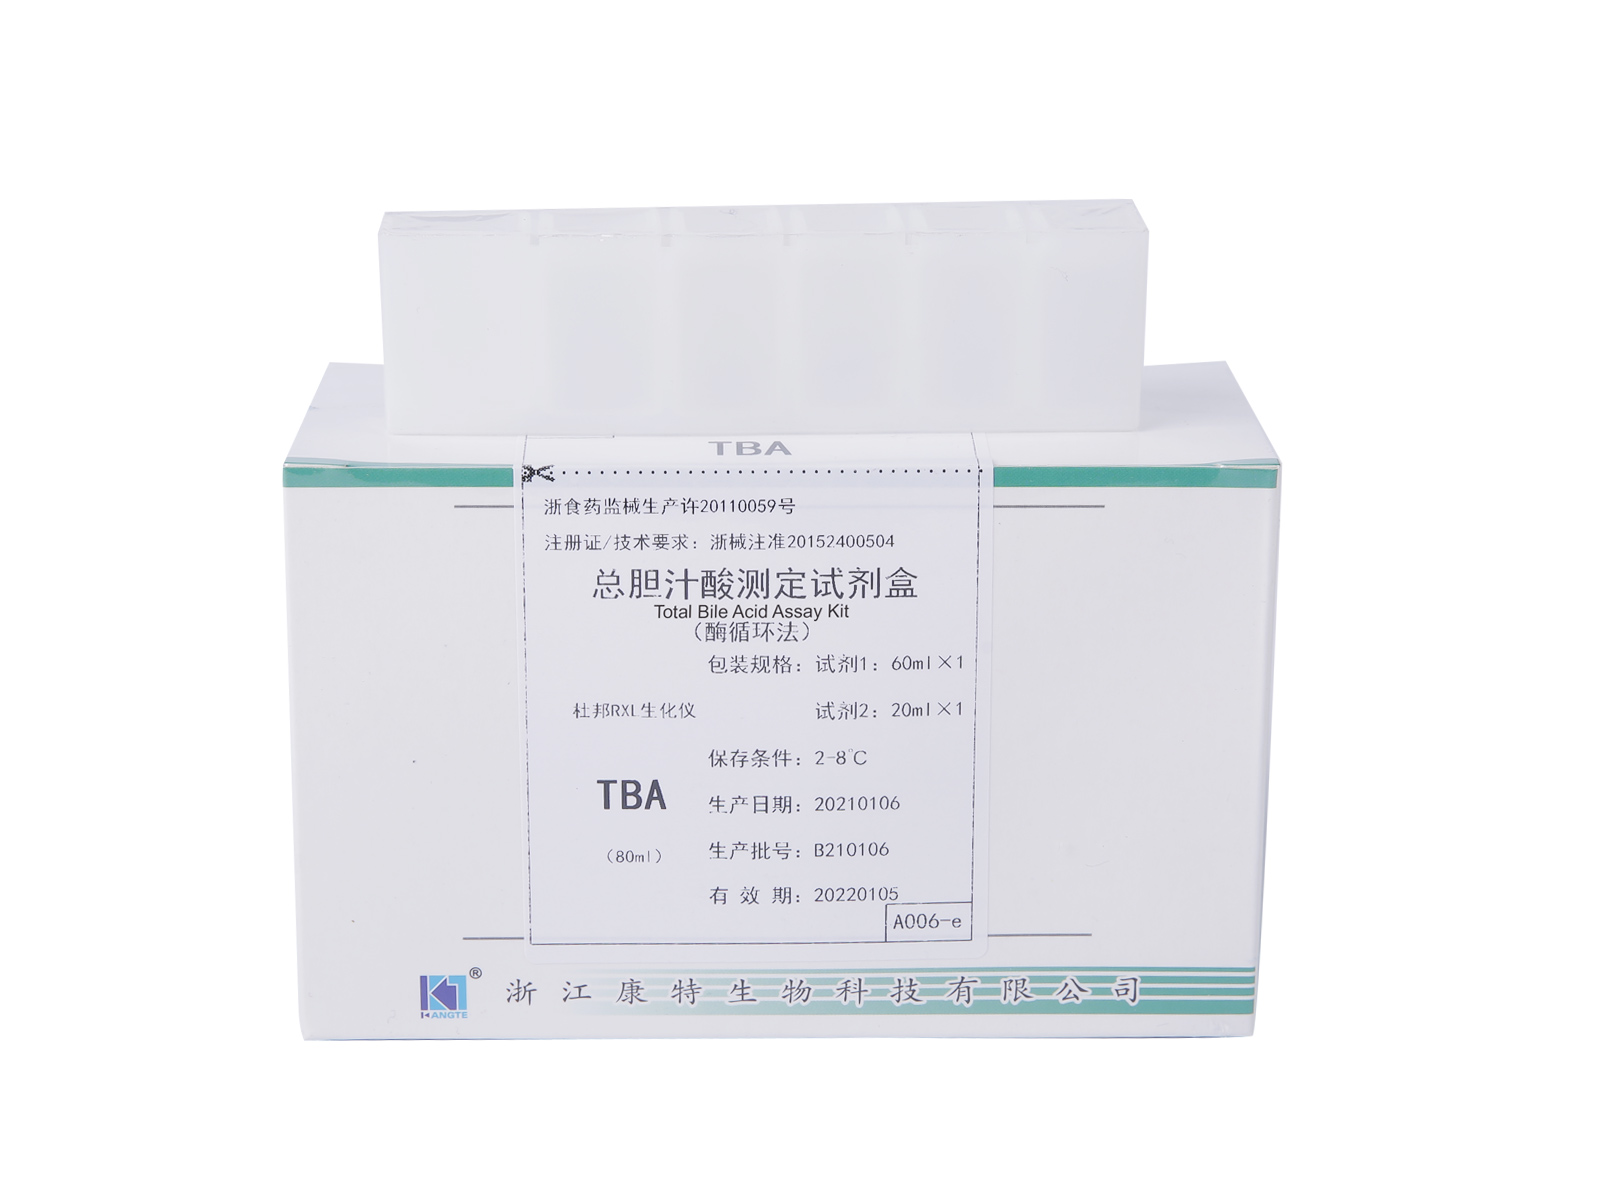 【TBA】Kit per il dosaggio degli acidi biliari totali (metodo del ciclo enzimatico)